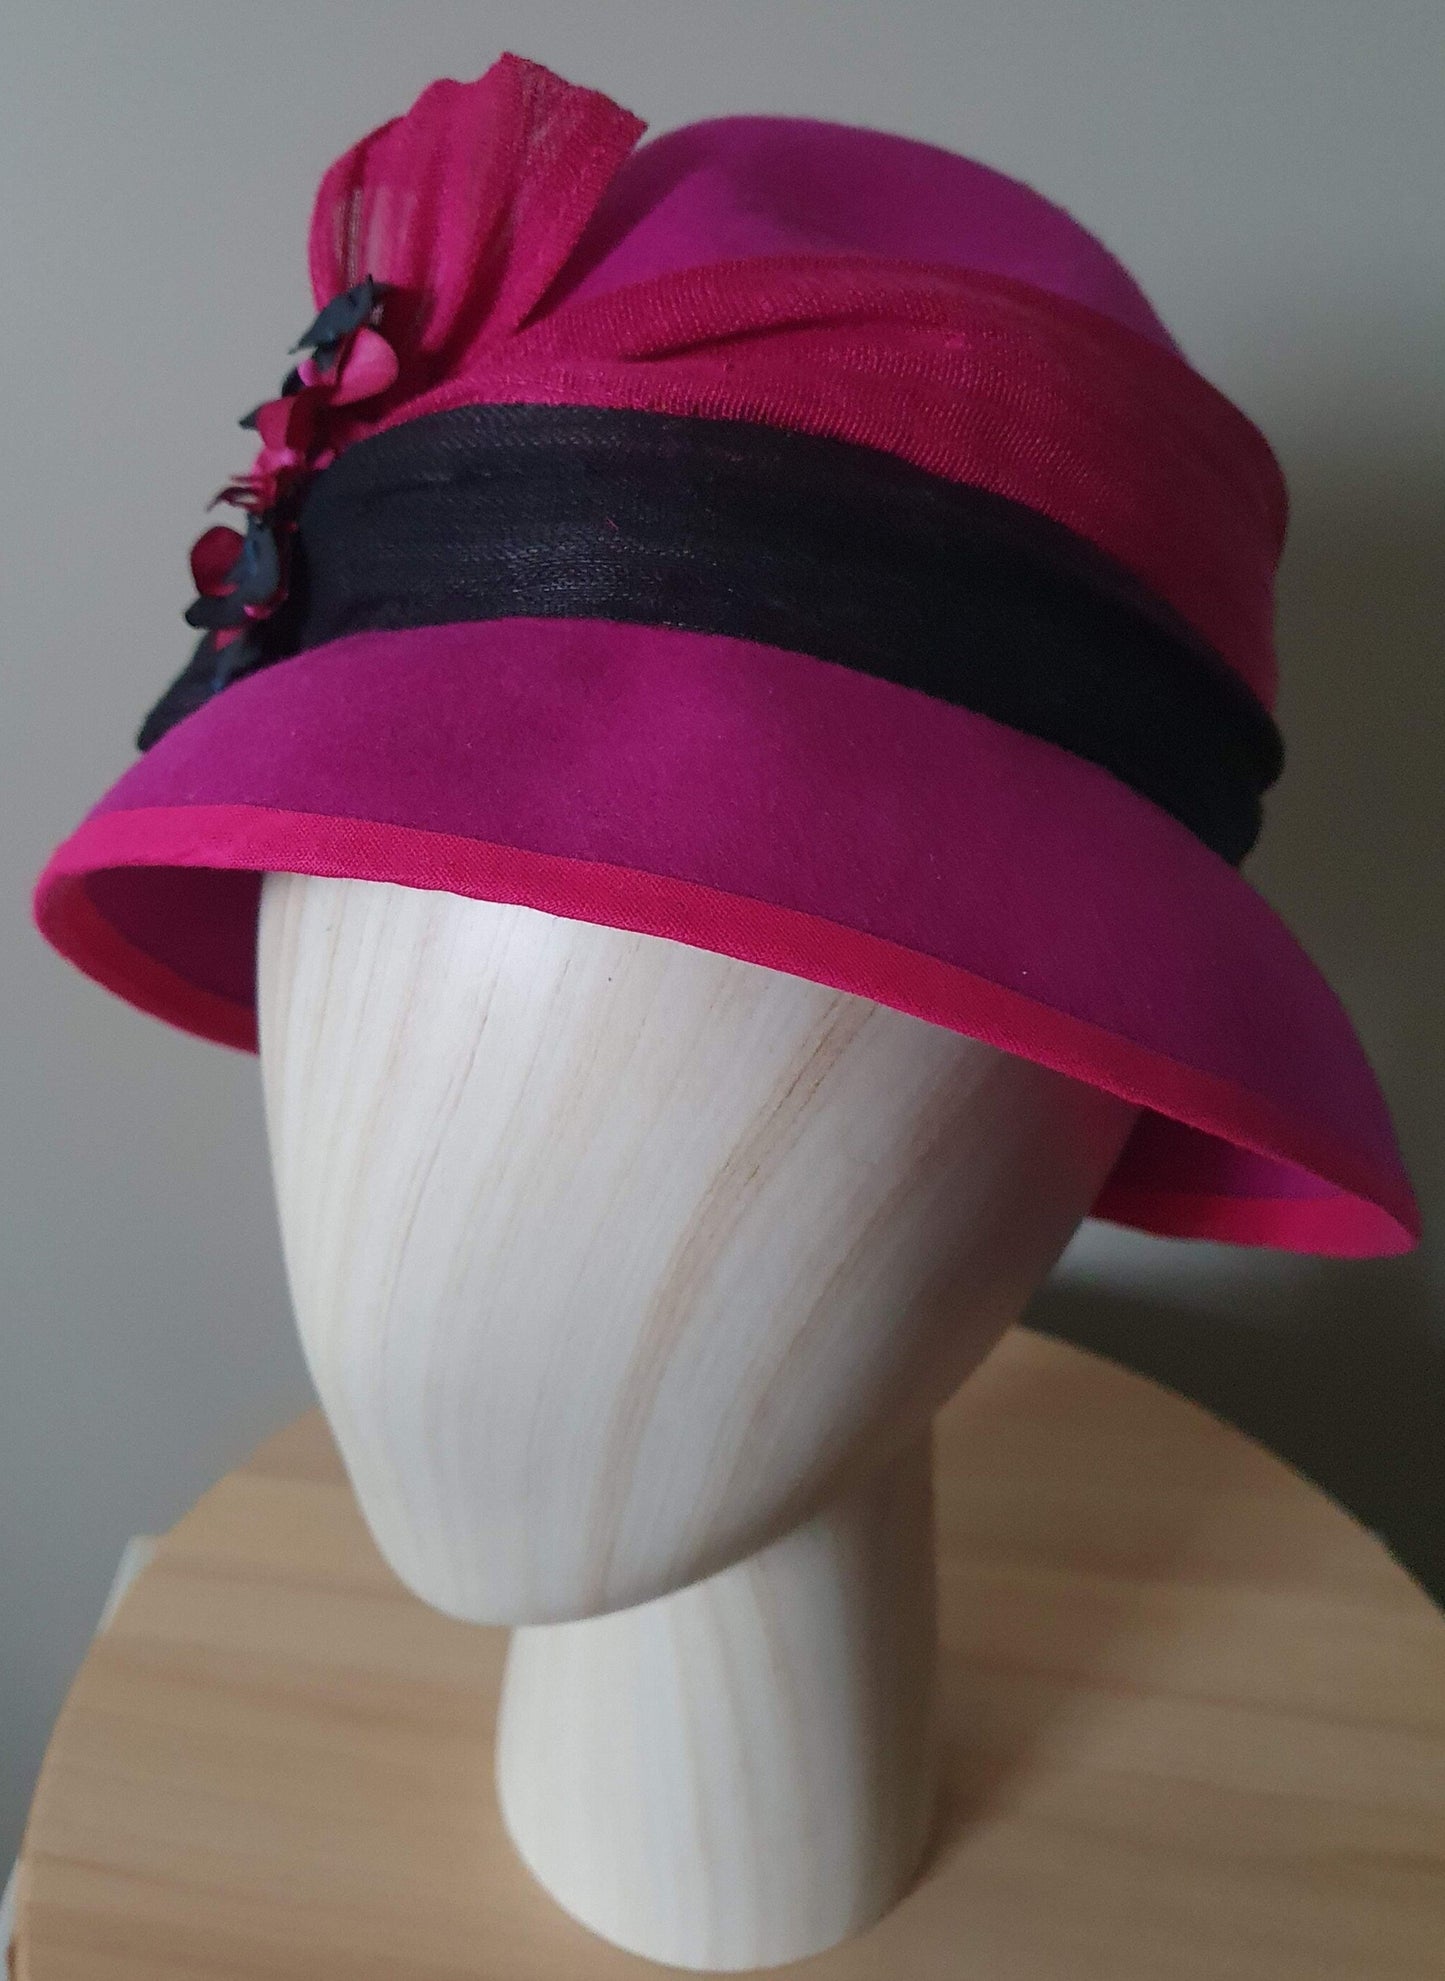 Elegante sombrero de mujer sombrero de fieltro fucsia con negro - tocado elegante, sombrero de fieltro, tocado, para todos los eventos sombrero cloche